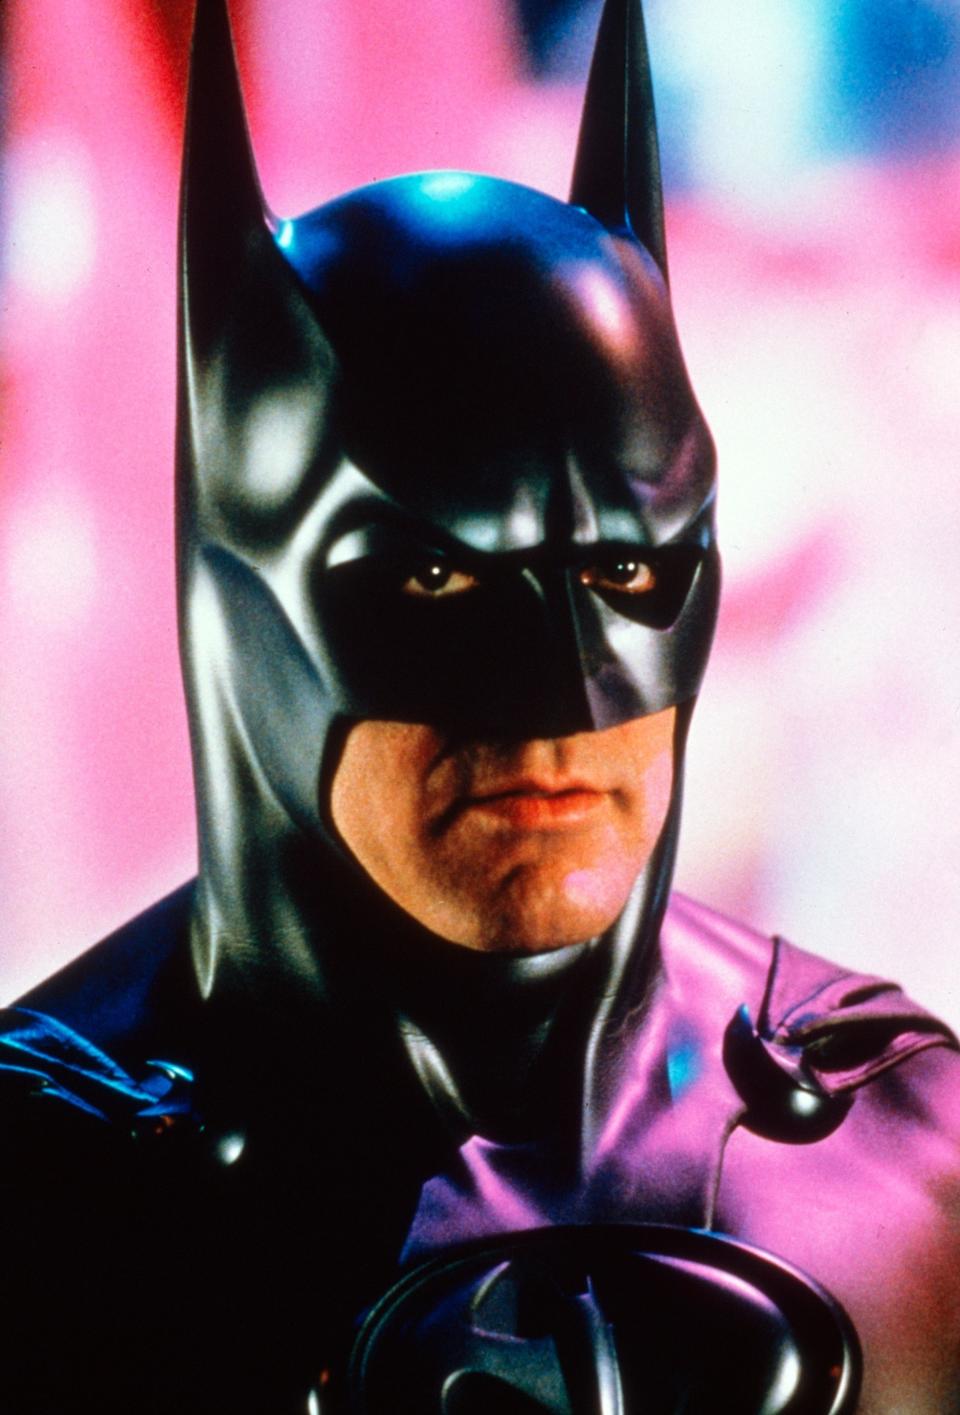 Clooney as batman